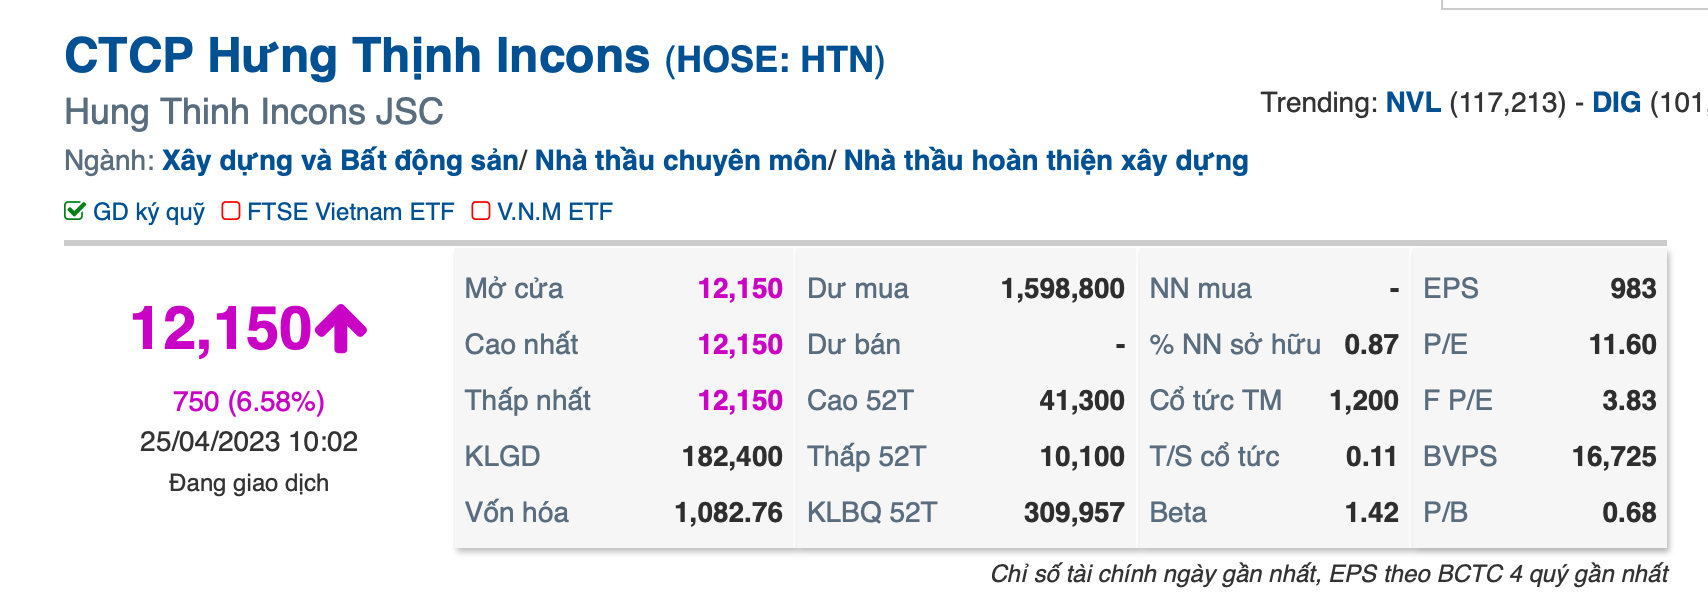 Cổ phiếu Hưng Thịnh Incons tăng trần trong phiên ngày 25.4. Ảnh: Chụp màn hình.